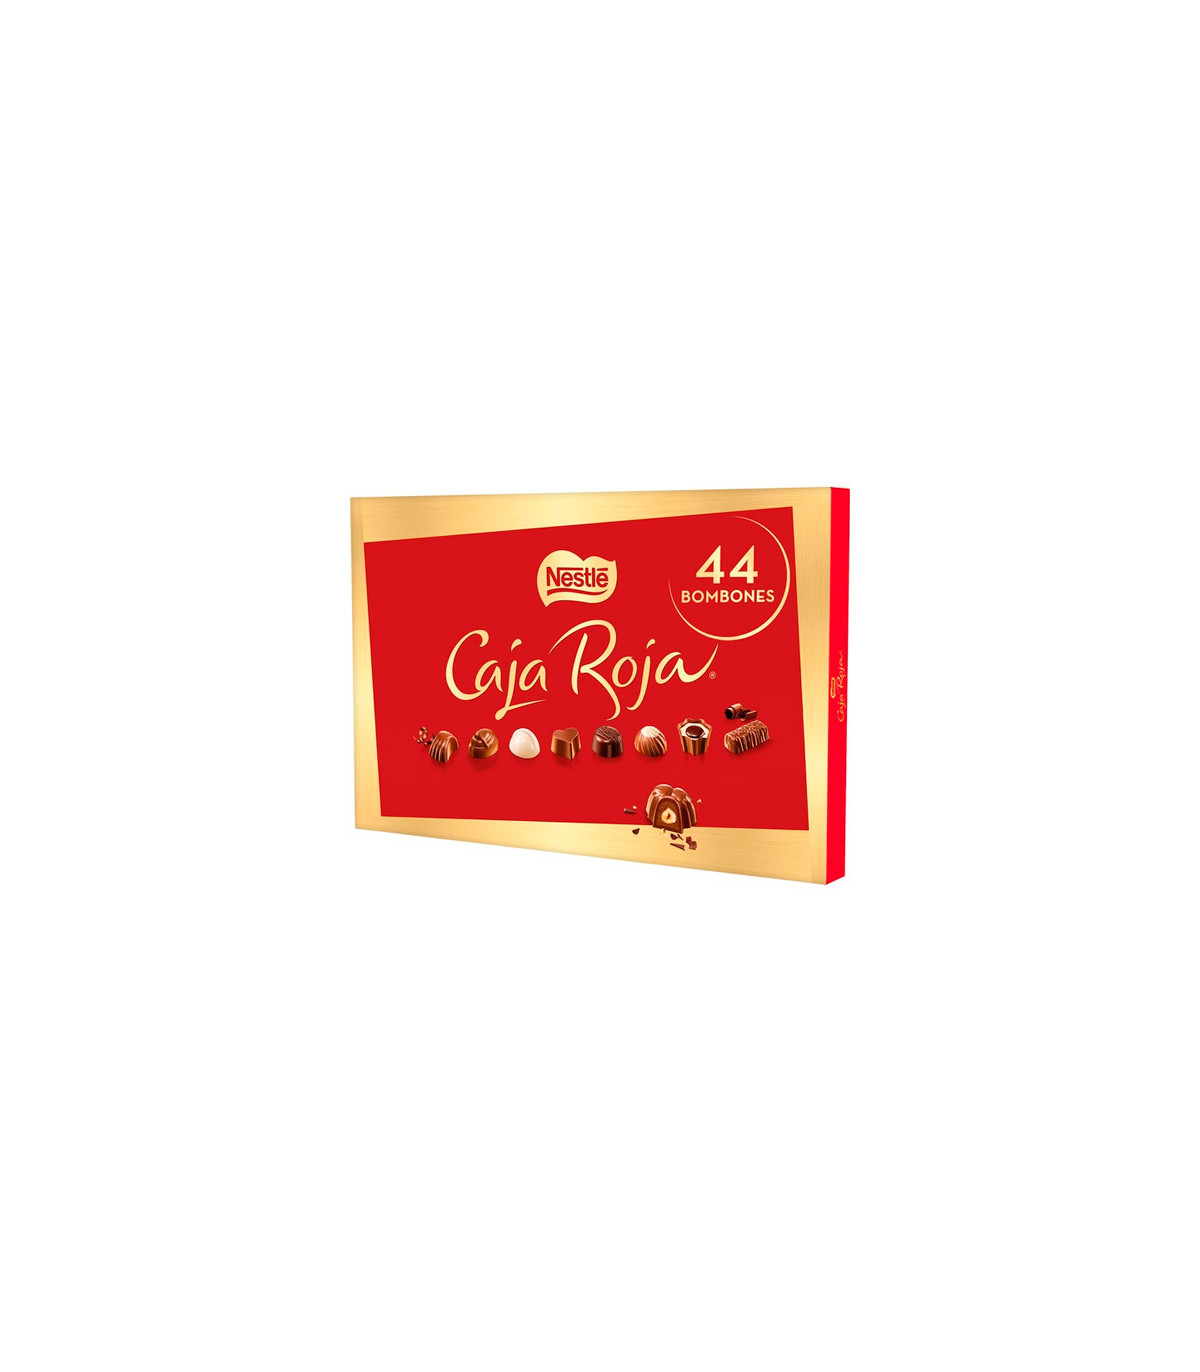 Caja roja - Nestlé - 400g